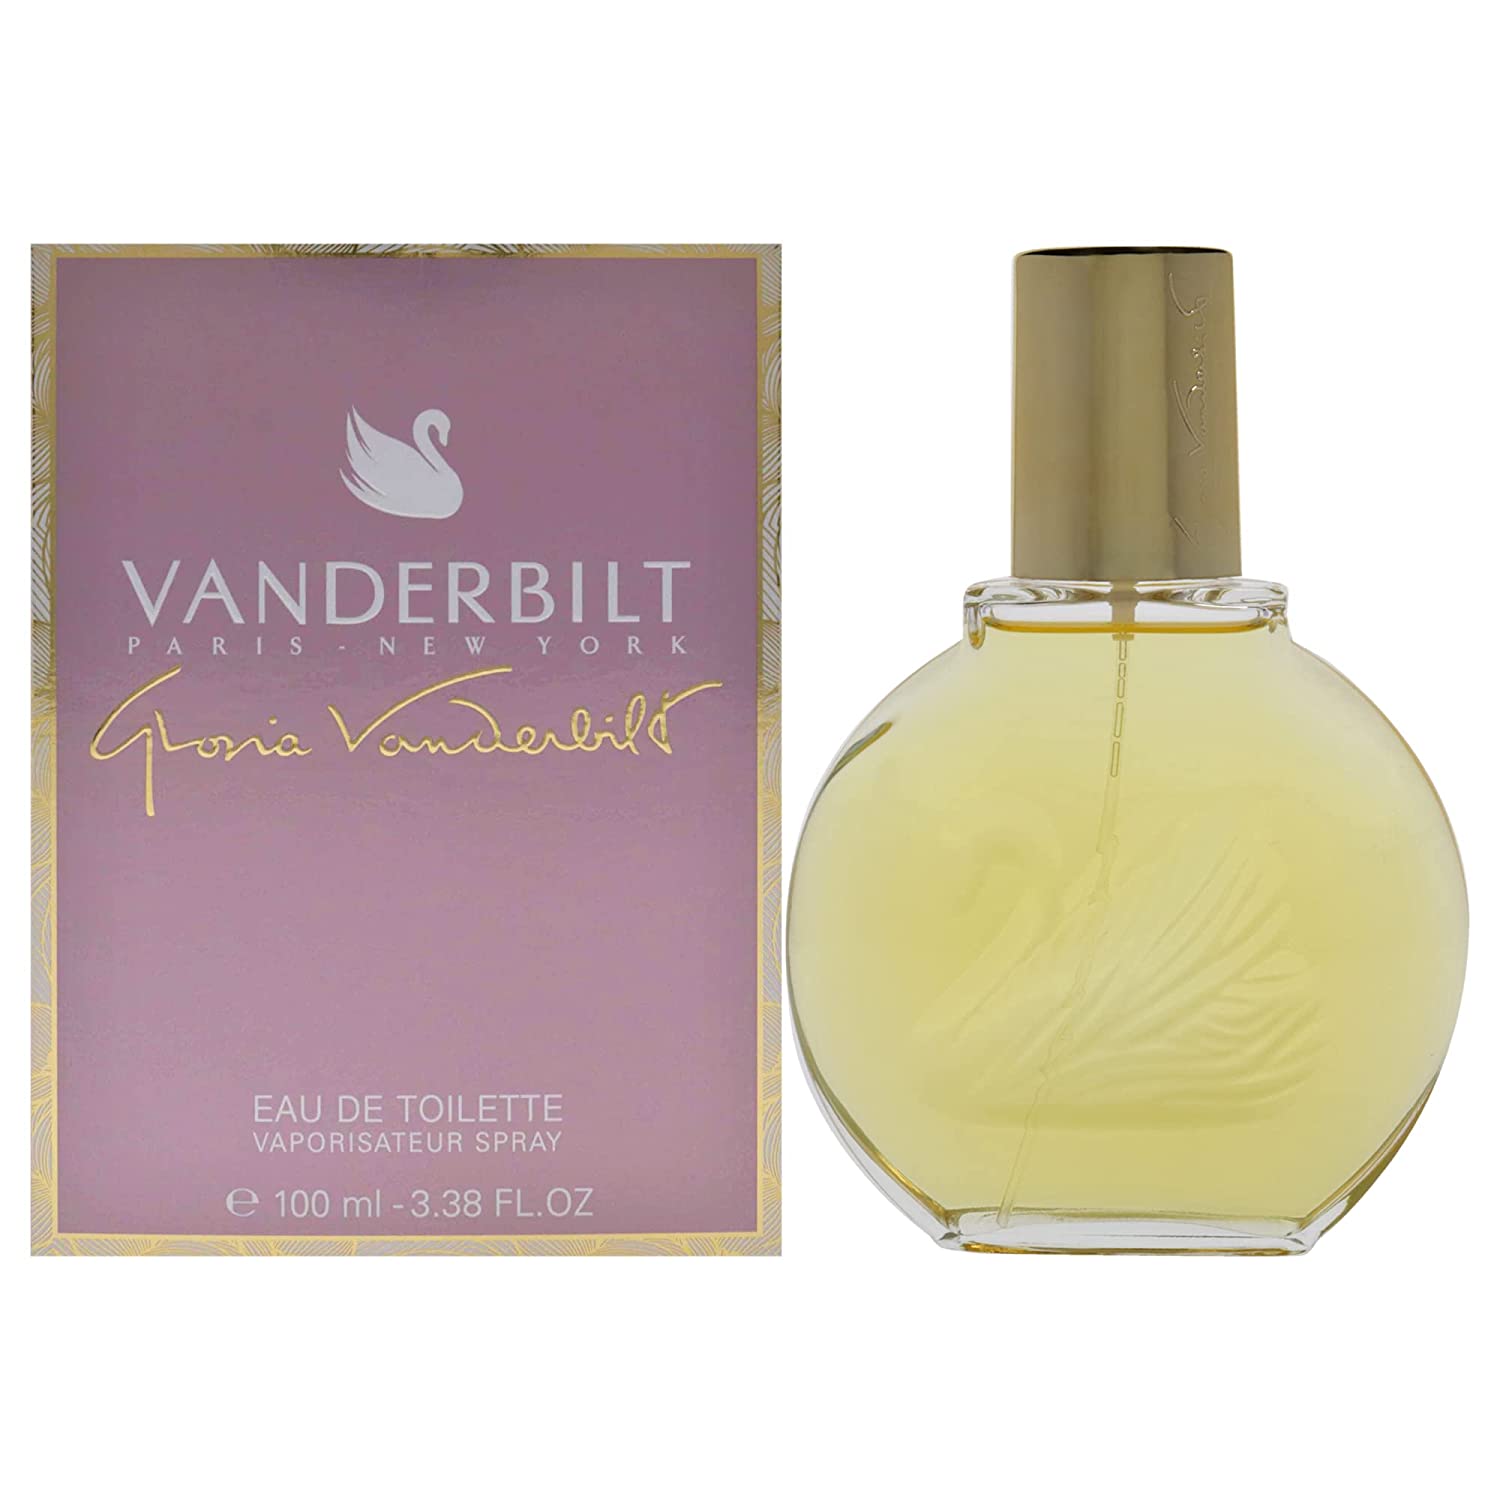 Vanderbilt by Gloria Vanderbilt 3.4 oz EDT Spray for Women